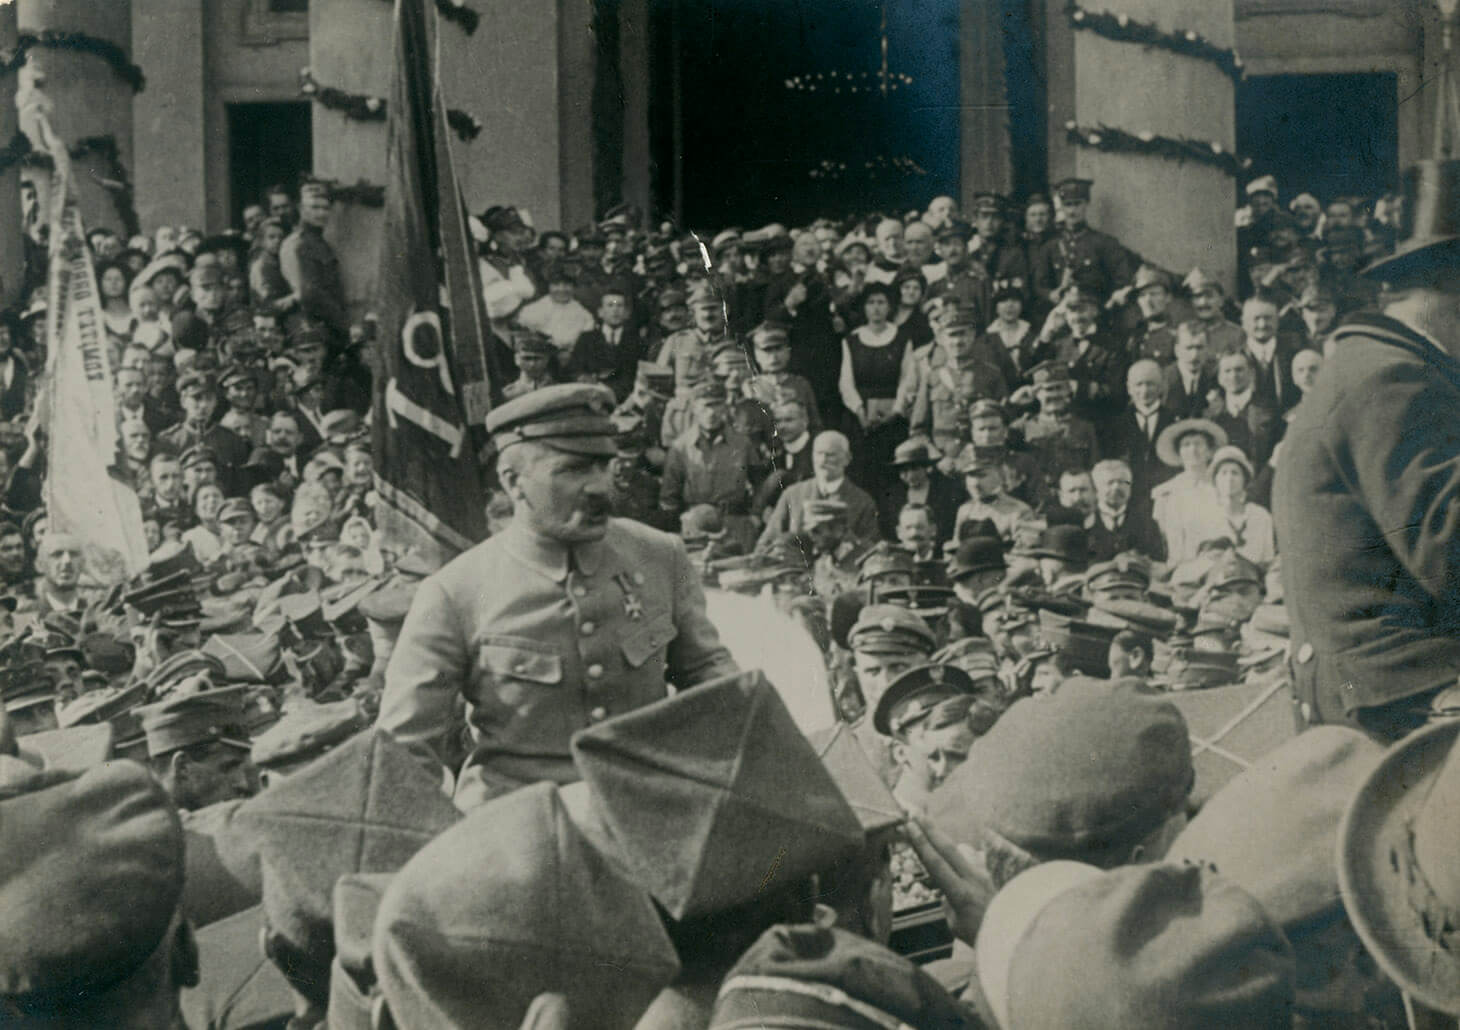 Czarno-biała fotografia ukazująca Naczelnego Wodza Józefa Piłsudskiego przed wejściem do kościoła św. Aleksandra na Placu Trzech Krzyży otoczonego przez tłum żołnierzy i cywilów. W tle widoczne jest wejście do świątyni, a także udekorowane kolumny po obydwu stronach wejścia. Nad tłumem unoszą się dwie chorągwie z nieczytelnymi emblematami. Centralnie, ponad głowami innych, wyróżnia się widziana do pasa, postać Marszałka Józefa Piłsudskiego. Wódz pokazany jest w jasnym mundurze i czapce maciejówce, z orderem po lewej stronie piersi. Tłum otacza bryczkę, w której Marszałek siedzi. Po prawej stronie widoczny jest stangret, kierujący pojazd w prawą stronę kadru. Na pierwszym planie znajdują się głowy w czapkach rogatywkach i kapeluszach, widziane od tyłu.